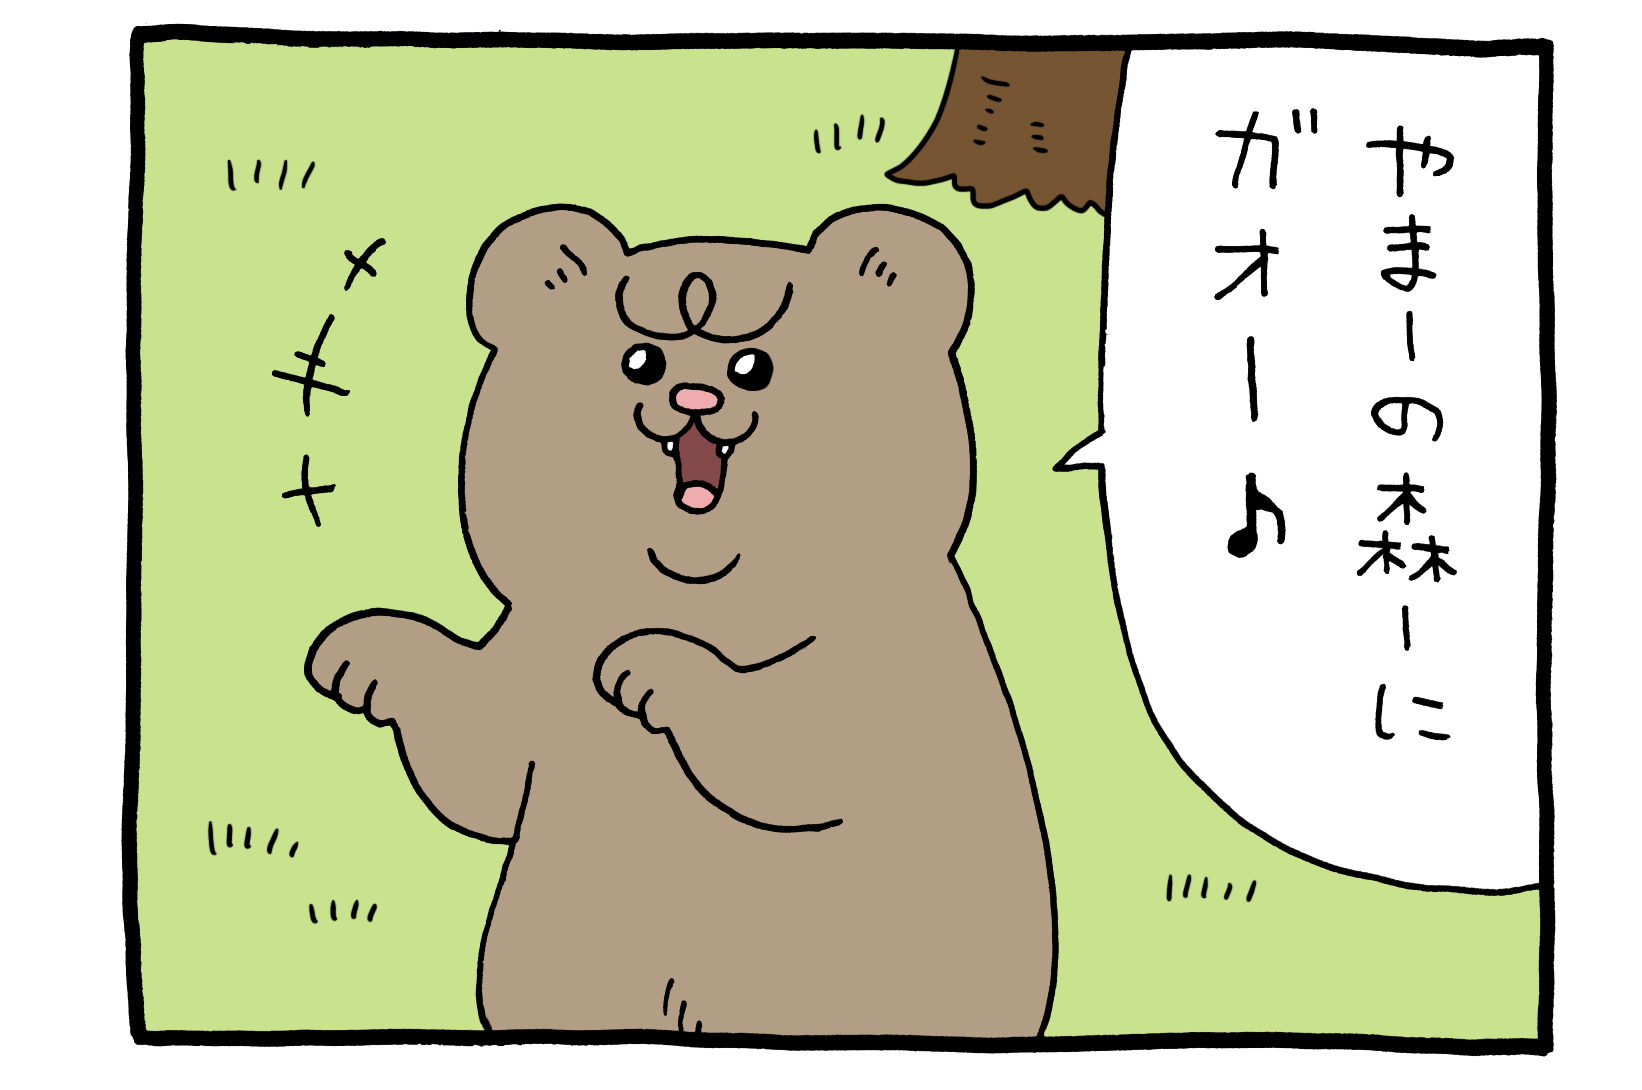 【4コマ漫画】悲熊「ガオー」